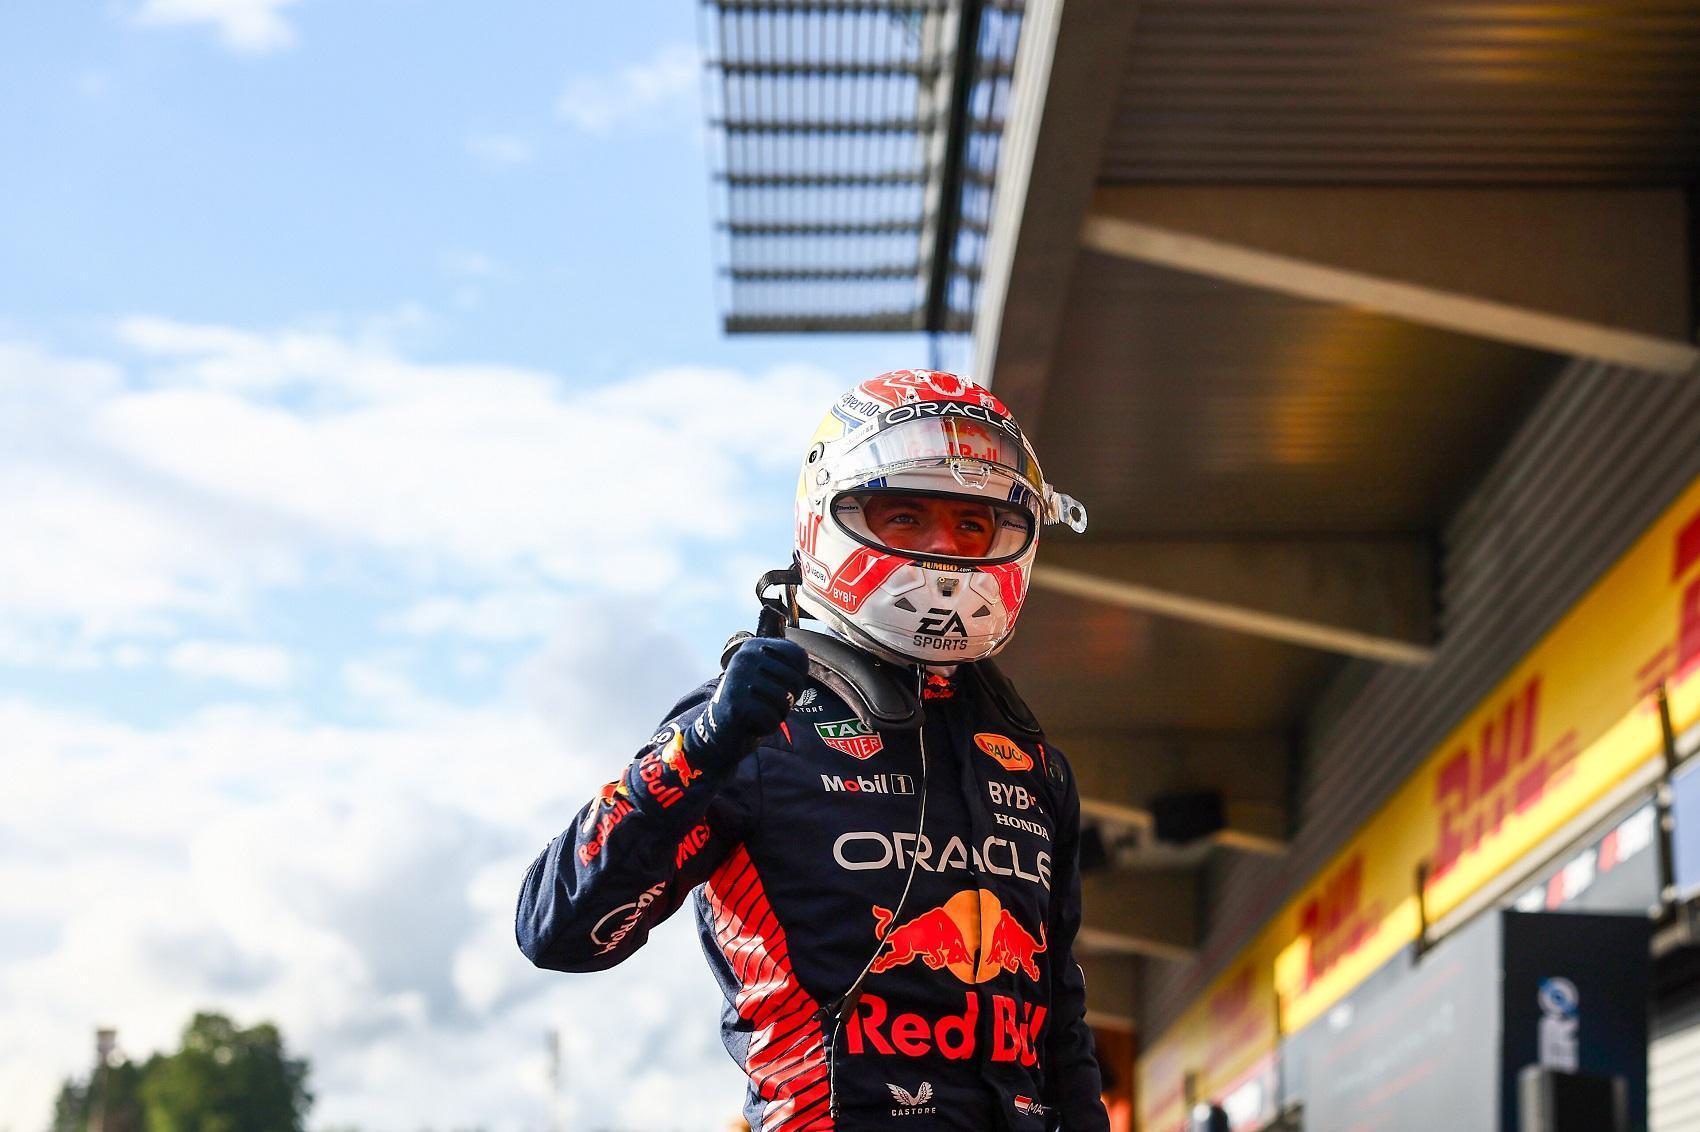 Verstappen Perezt megelőzve, sorozatban a nyolcadik nagydíját nyerte meg – Összefoglaló